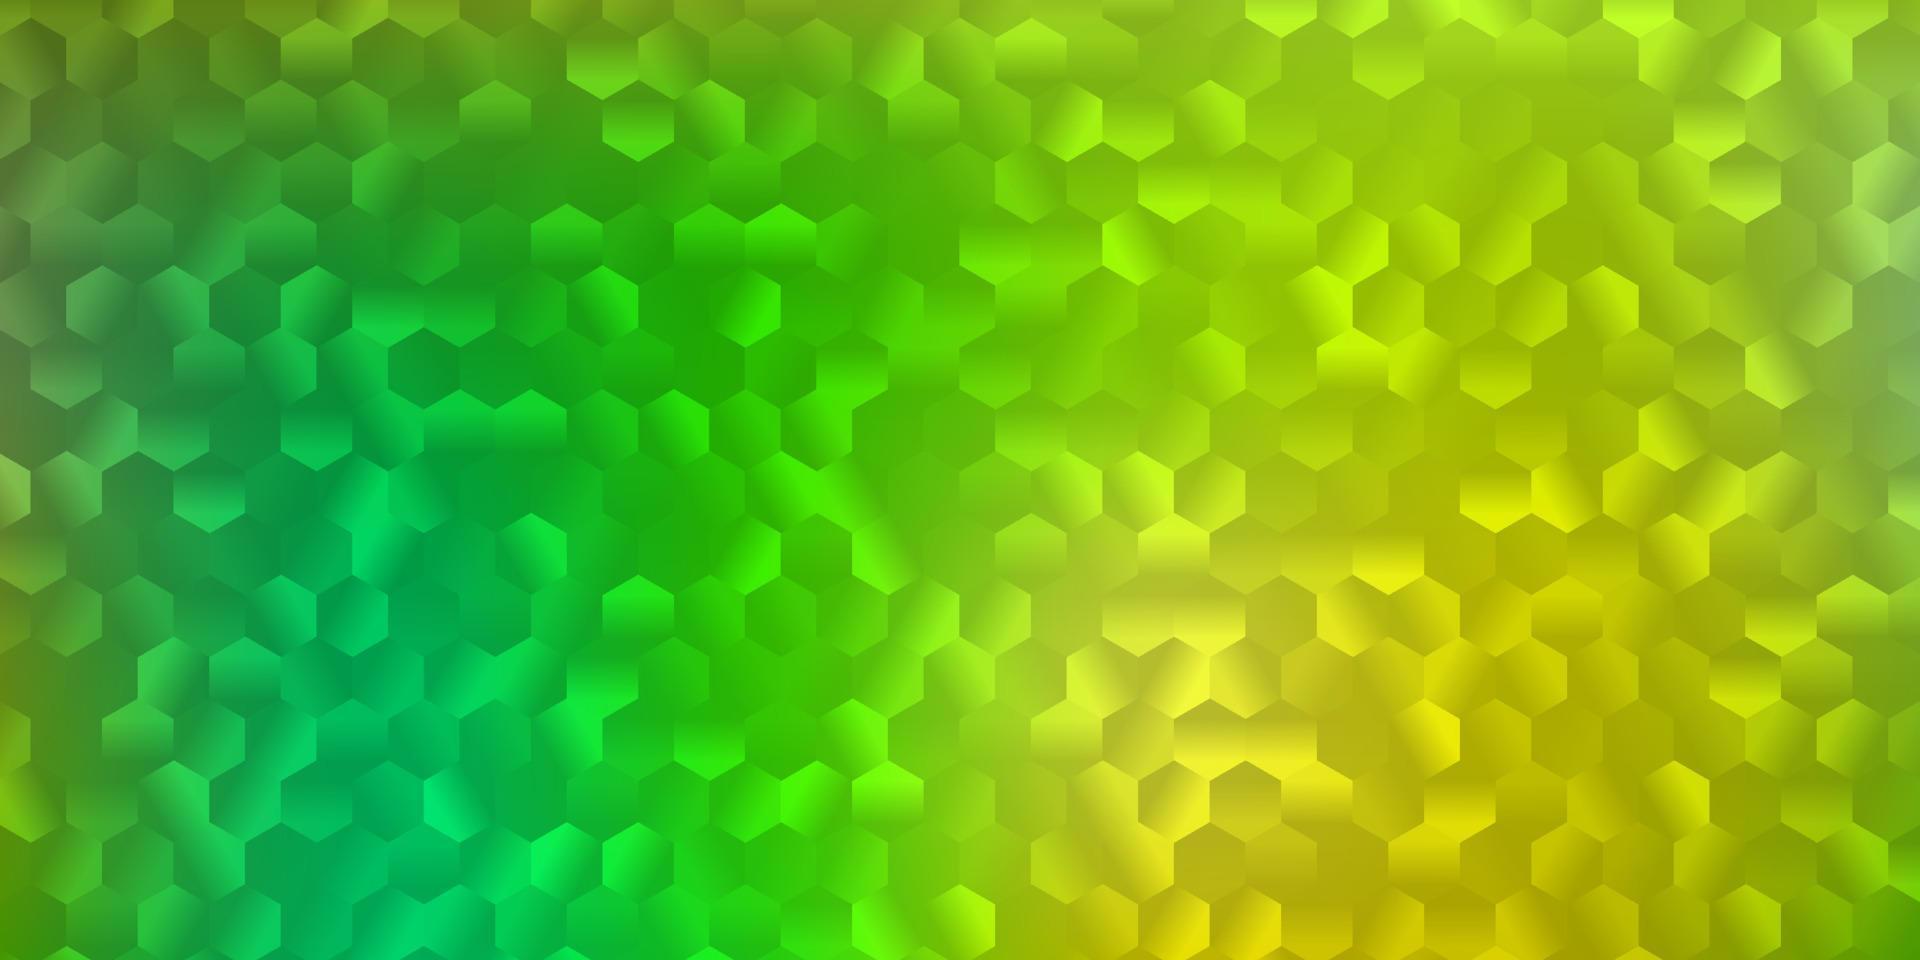 modèle vectoriel vert clair, jaune avec hexagones.